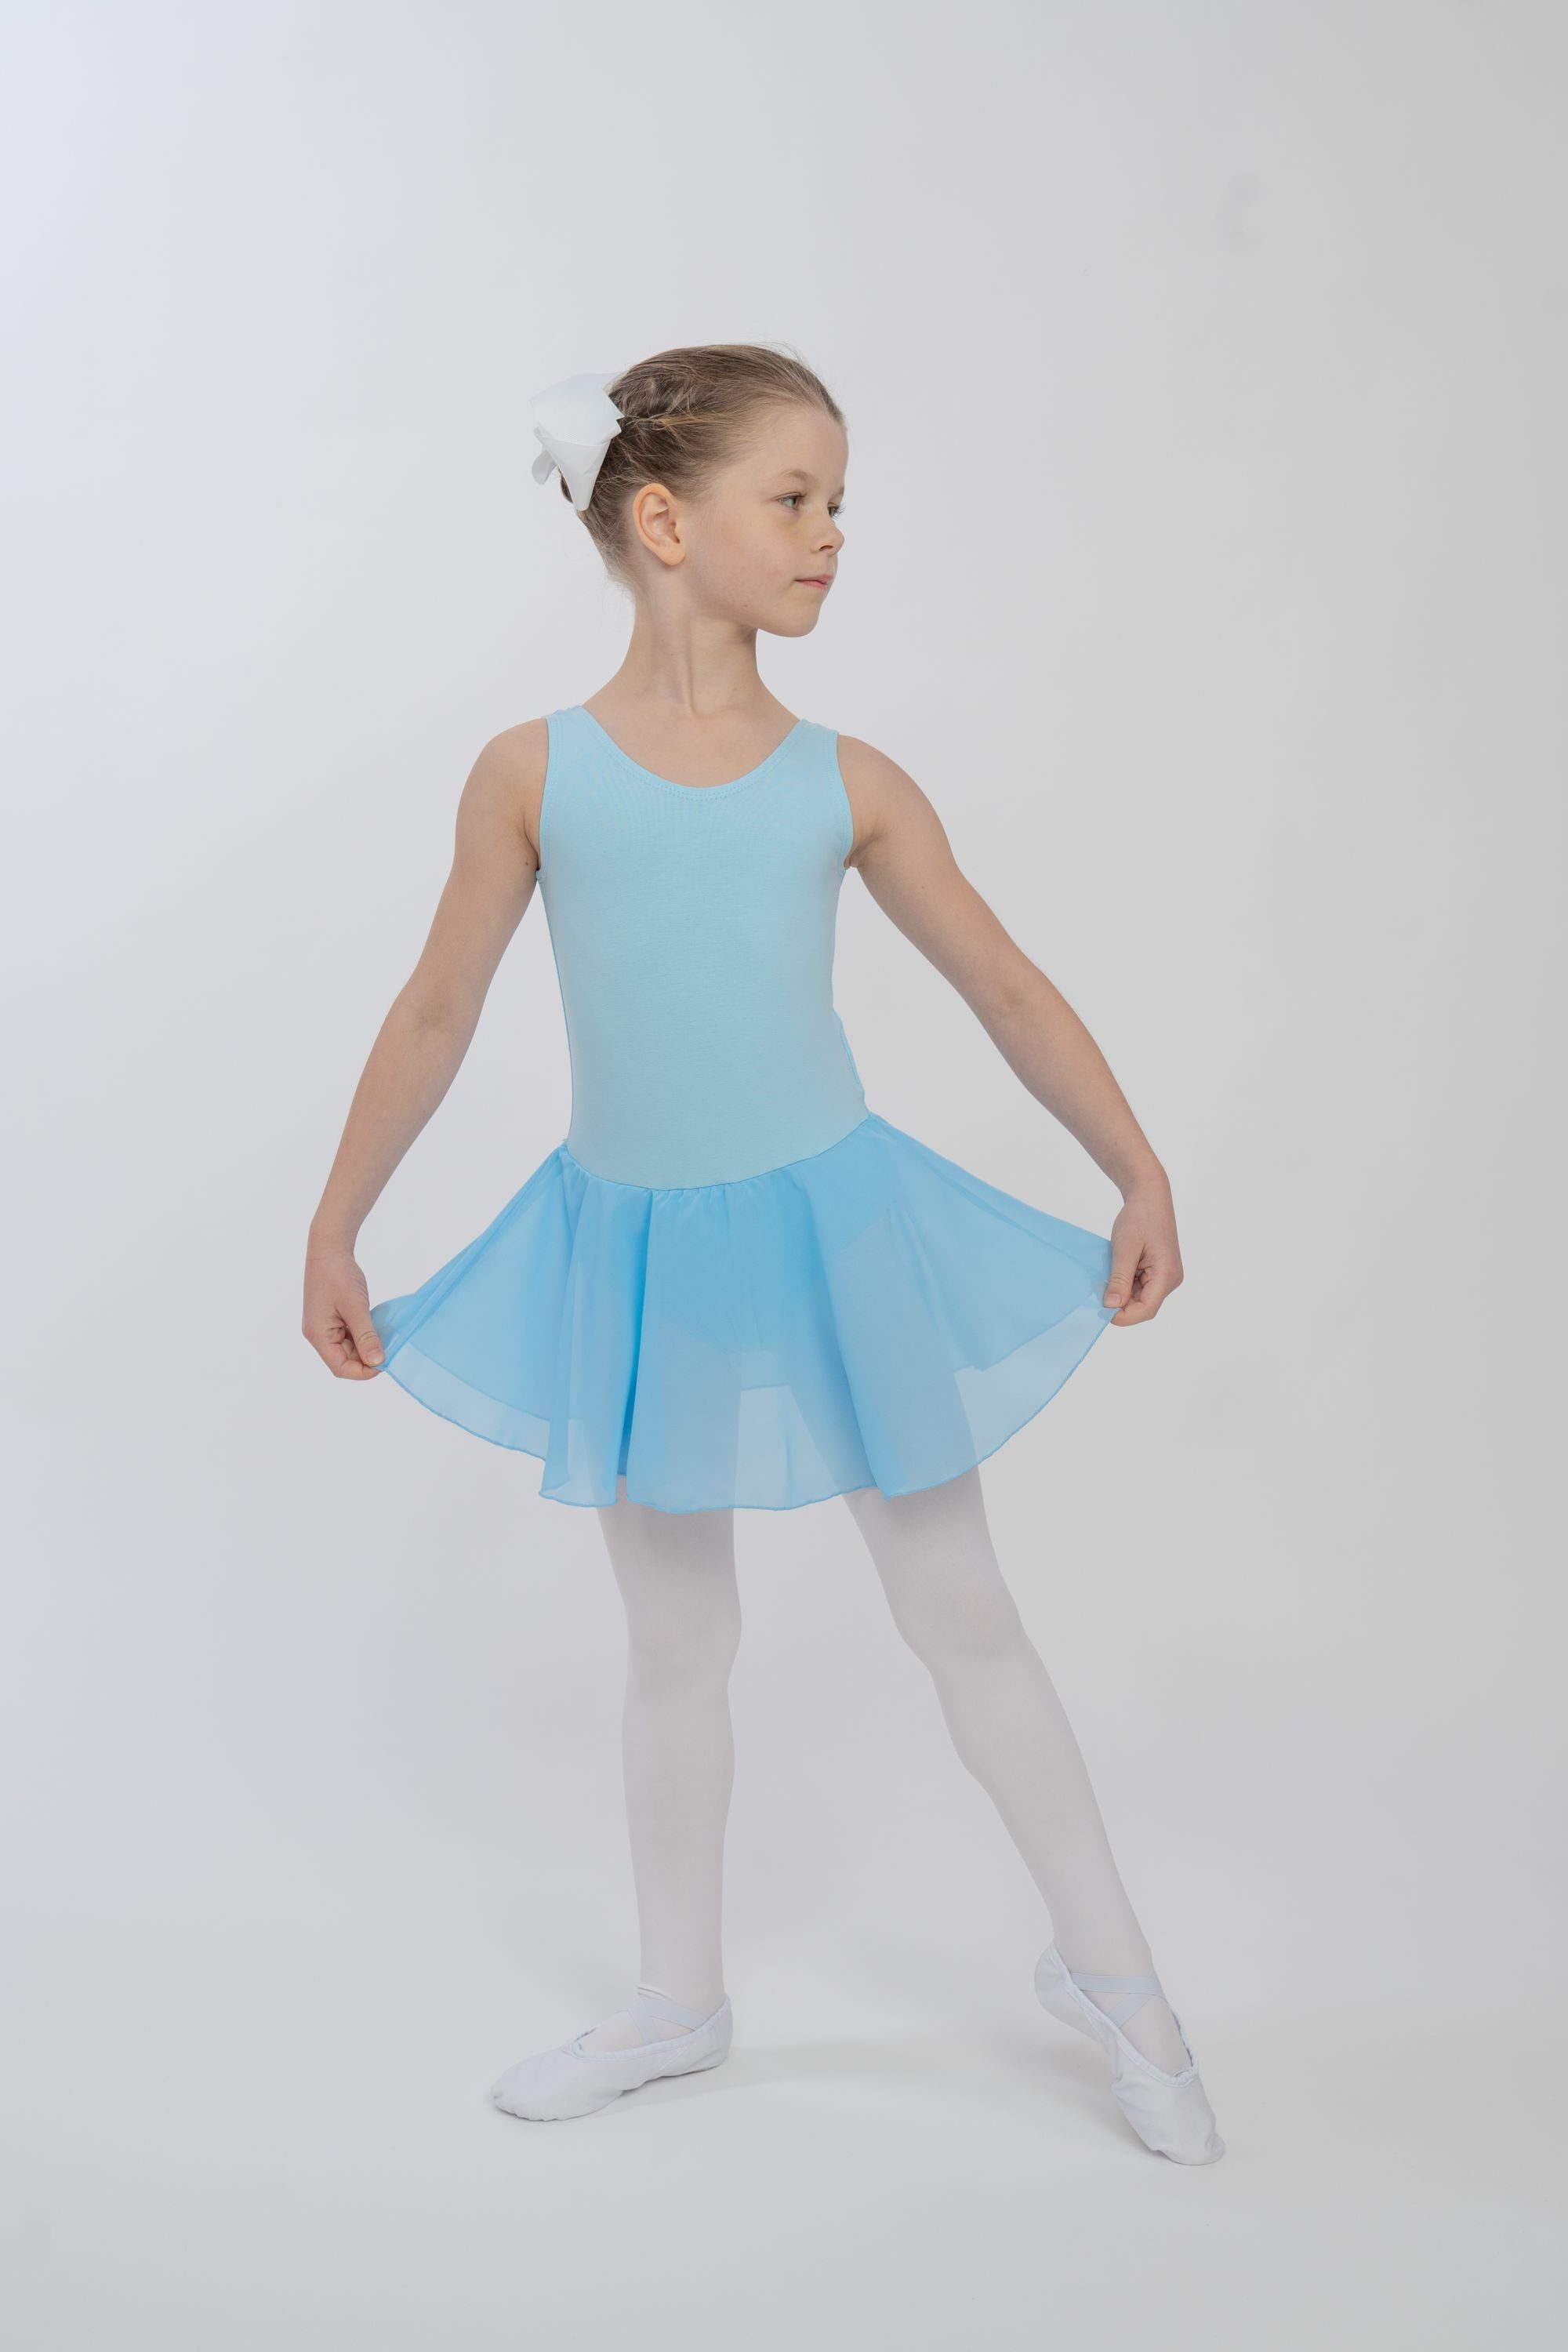 tanzmuster Chiffonkleid Ballettkleid Bella Mädchen Schlüssellochausschnitt weicher mit Kinder hellblau Ballett aus Baumwolle Ballettbody für fürs